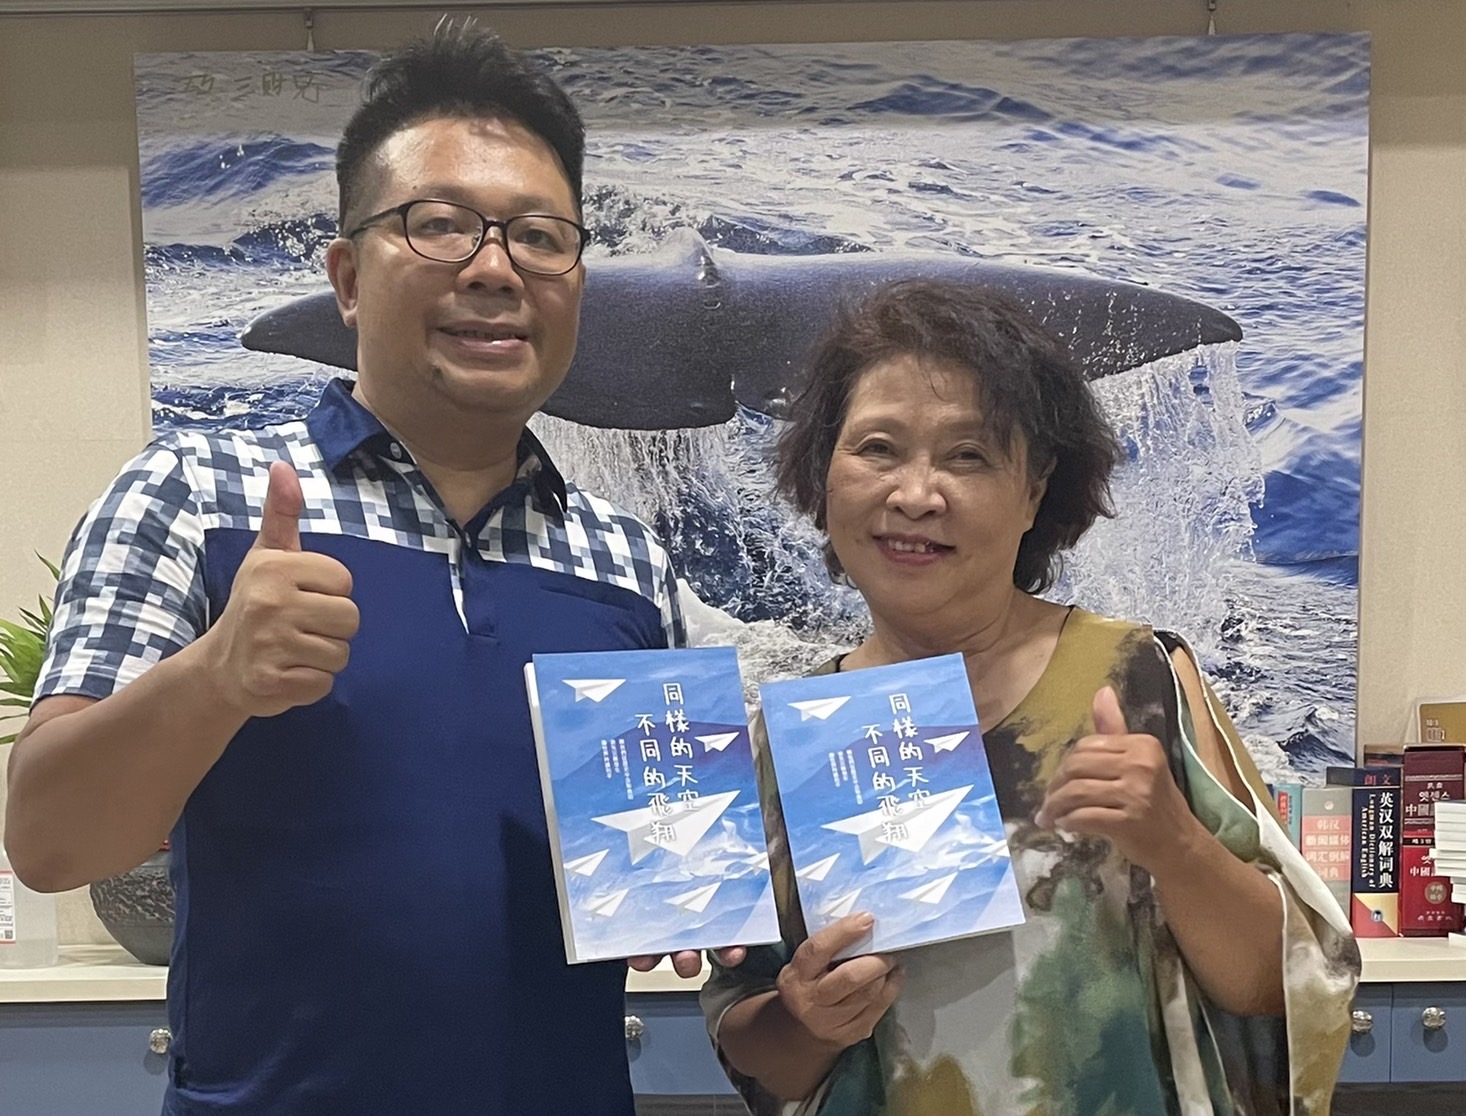 由 就 諦 學 堂 贊 助 印 制 ， 描 述 當 年 越 戰 時 期 ， 華 僑 逃 難 故 事 的 公 益 書 籍 ， 《 同 樣 的 天 空 ， 不 同 的 飛 翔 》 已 經 上 市 ！ 歡 迎 參 考 。 /   圖 片 提 供 ： 賽 珍 珠 基 金 會 